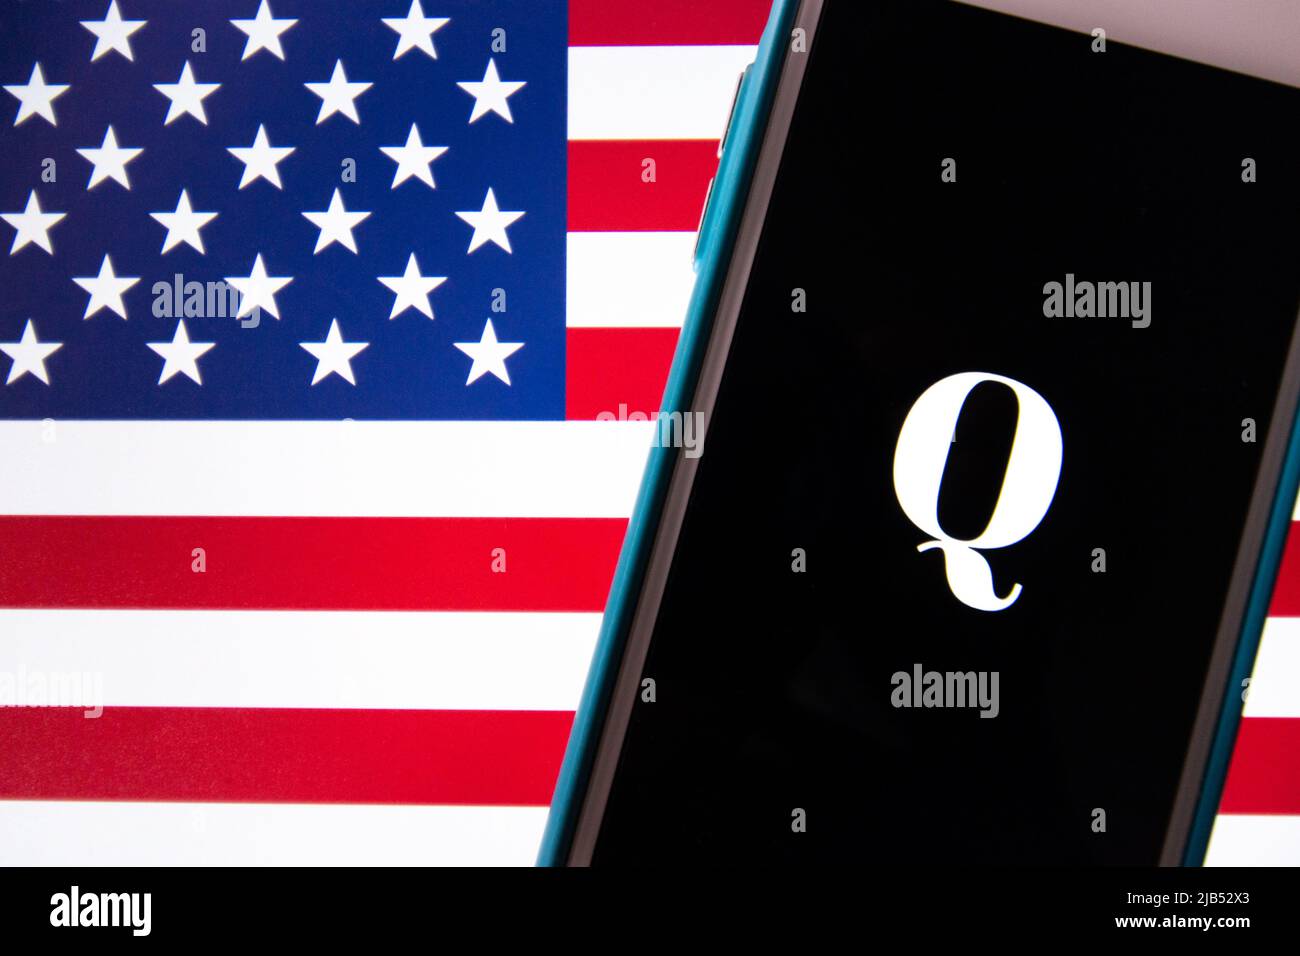 Kumamoto / JAPON - Oct 20 2020 : le logo de Qanon, un groupe de conspiration d'extrême droite, sur iPhone avec arrière-plan drapeau américain Banque D'Images